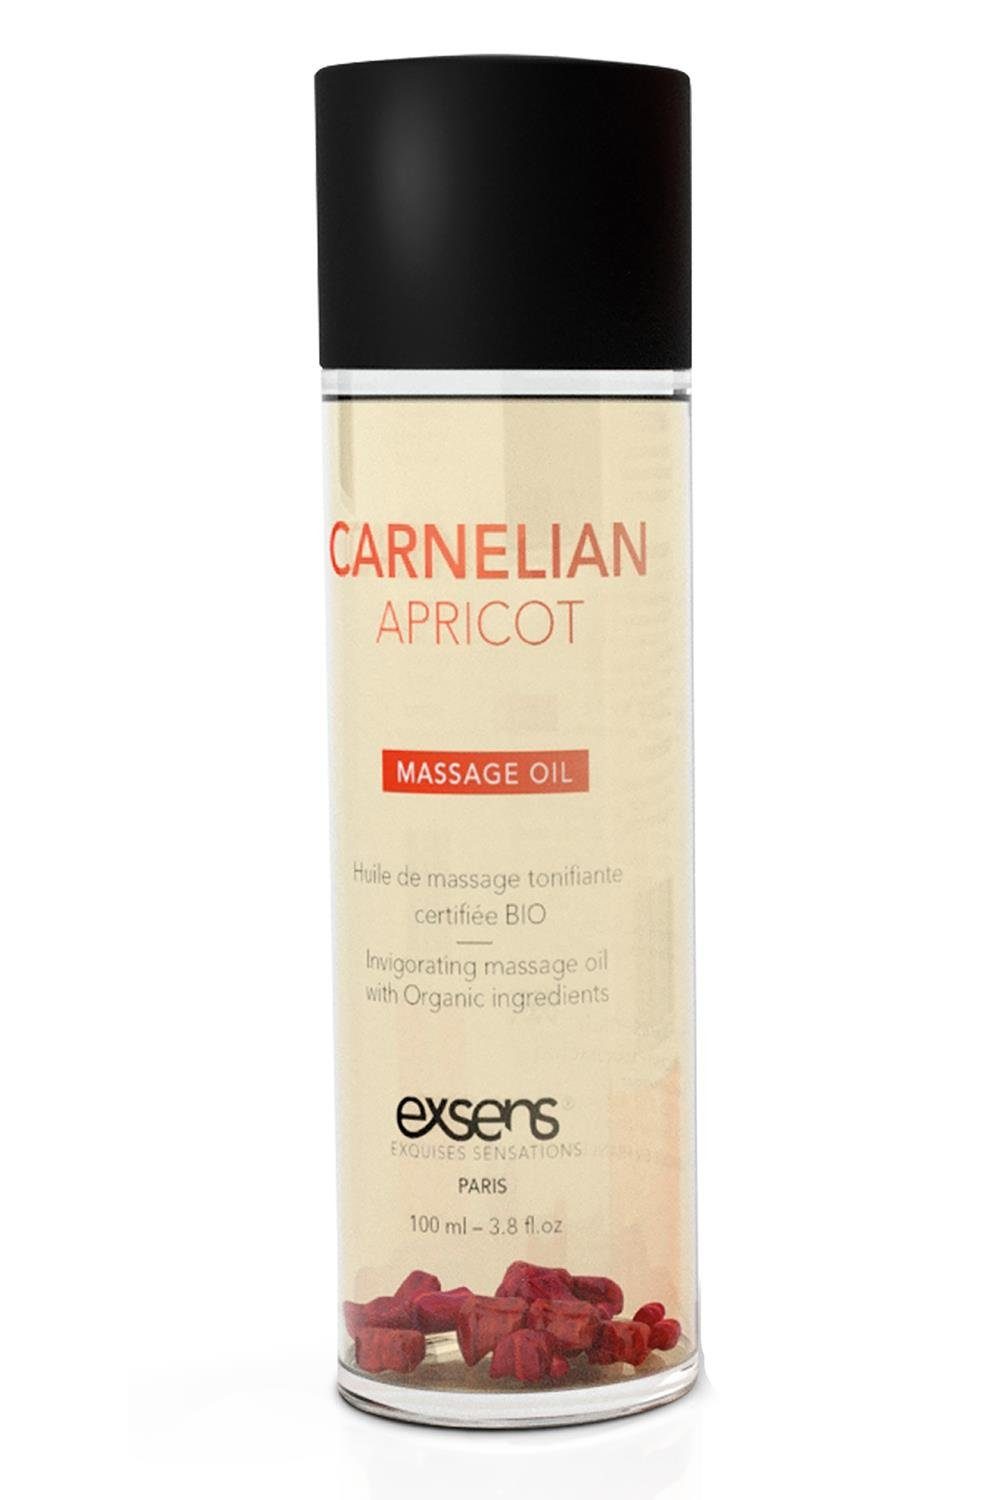 Exsens Gleit- & Massageöl Exsens Organic Massage Oil Carnelian Apricot 100ml, Fließt leicht auf der Haut